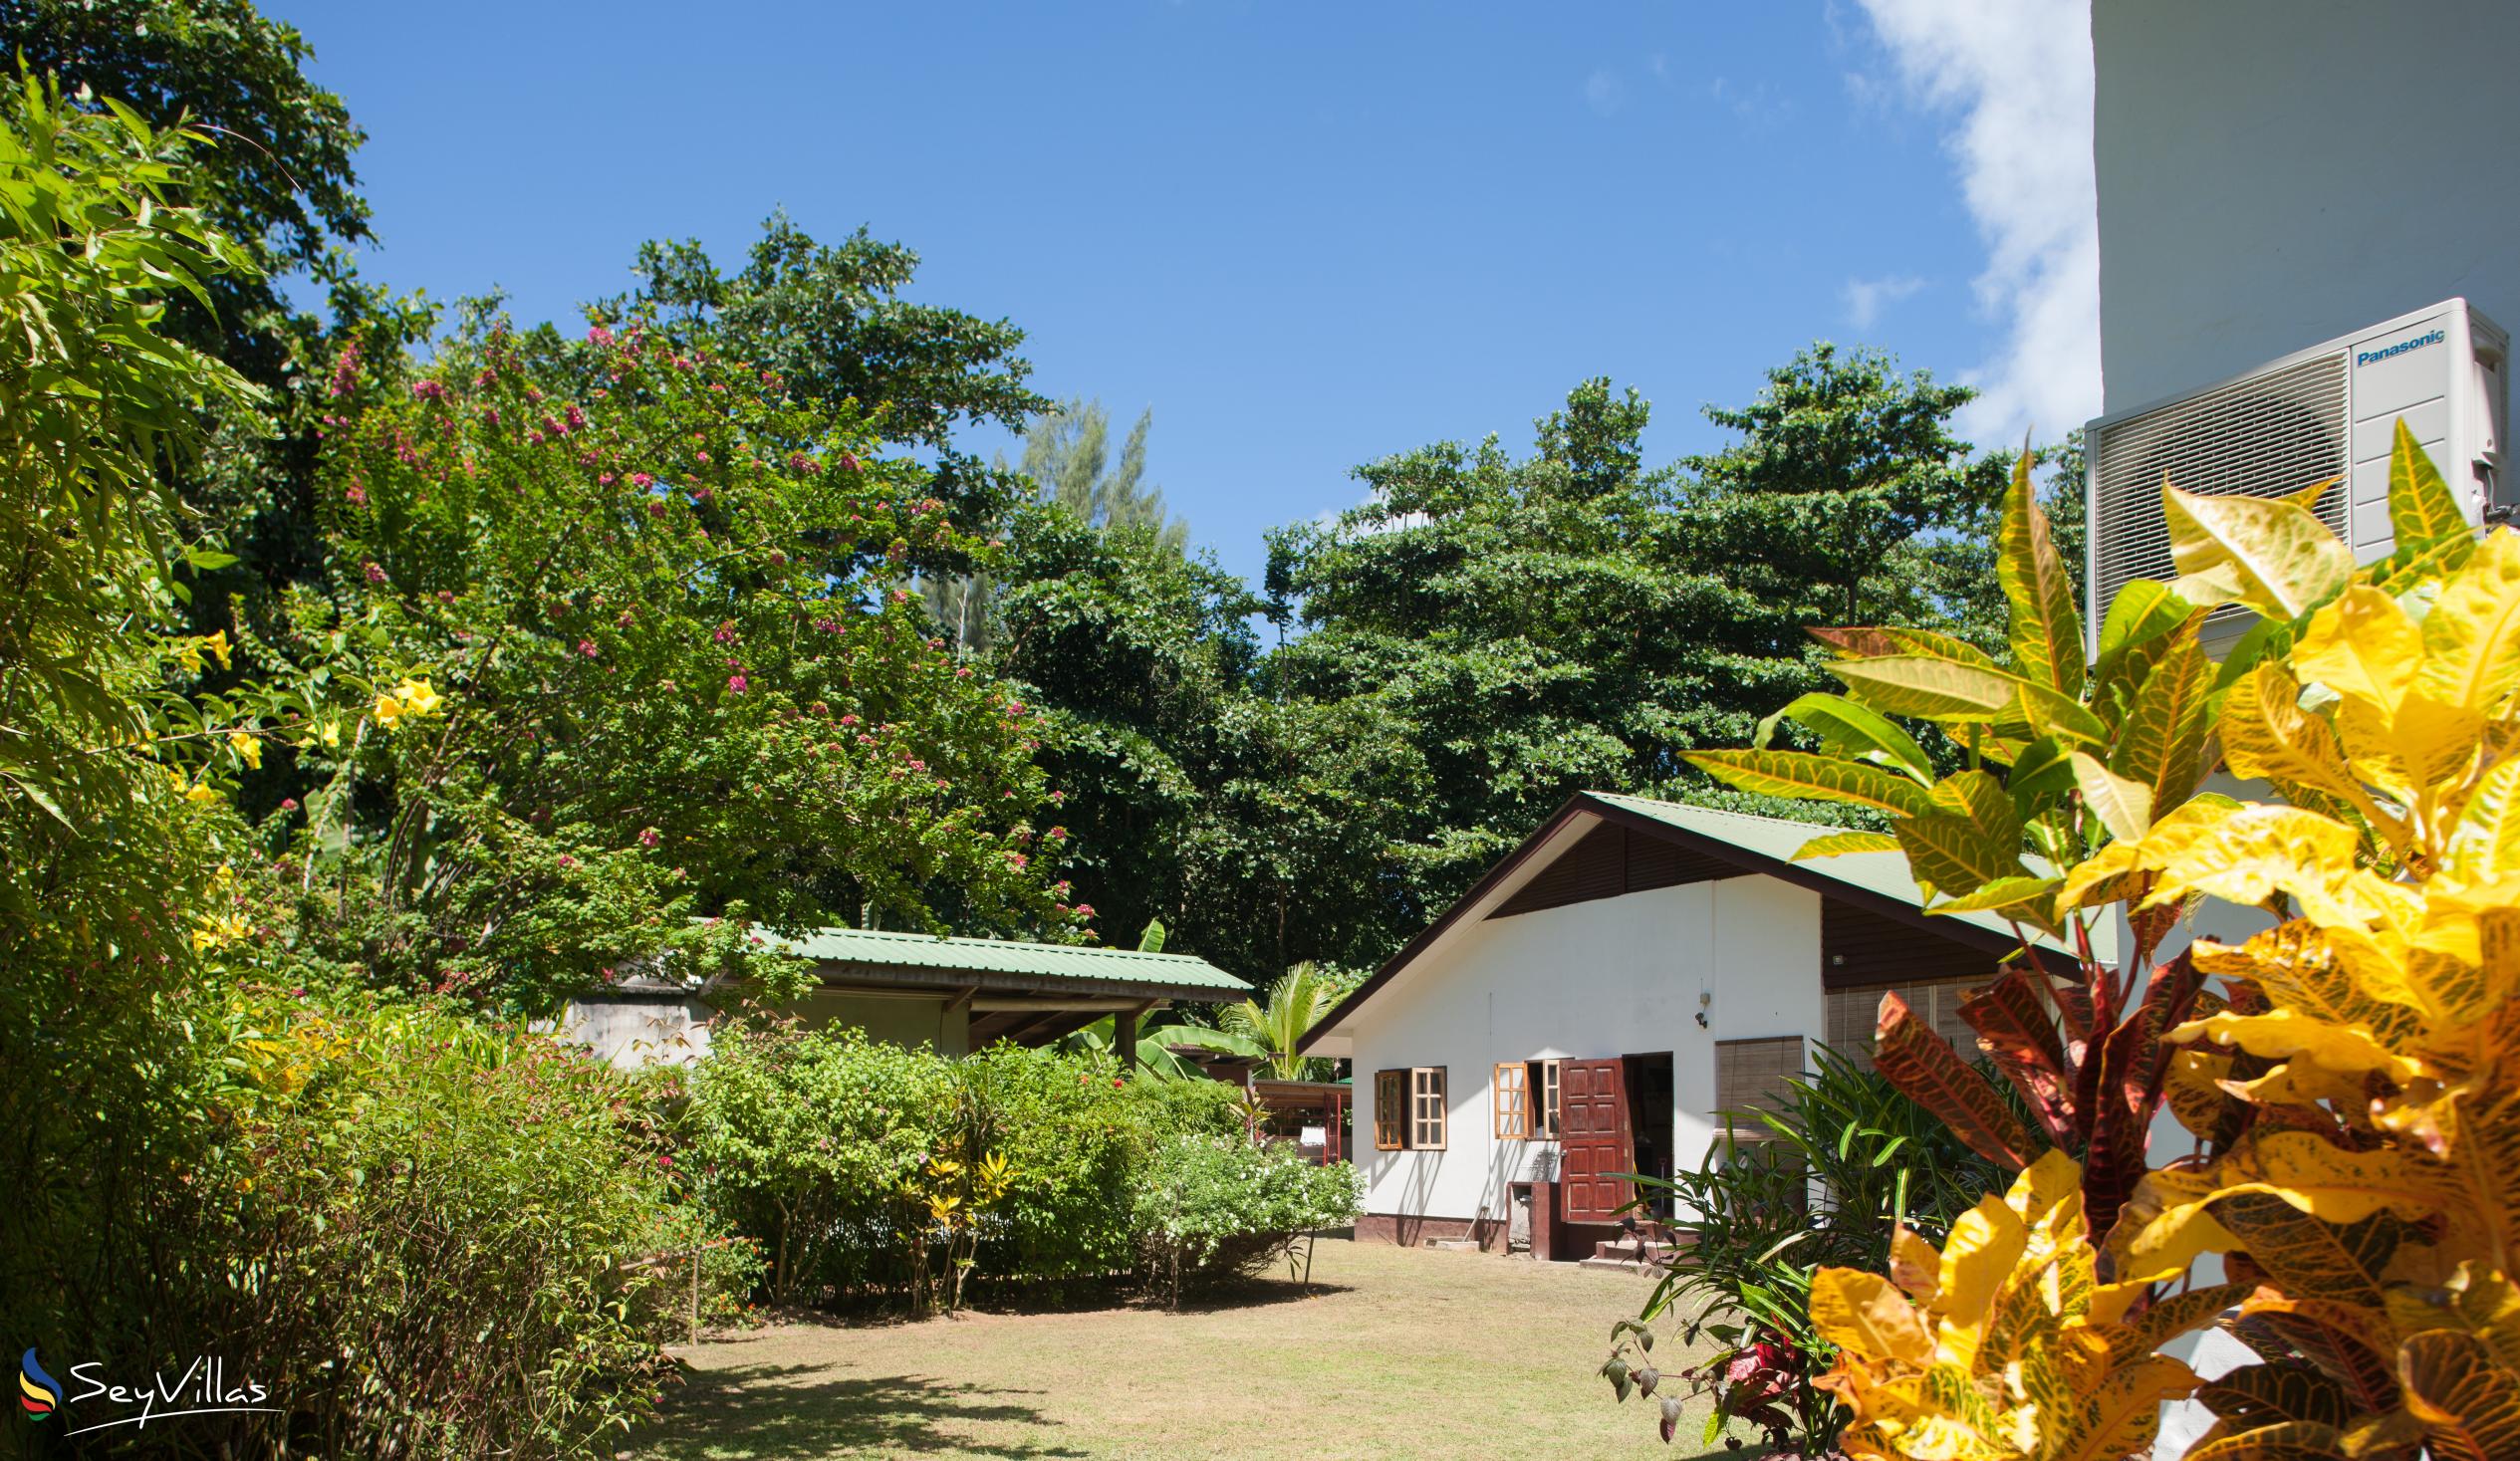 Foto 16: Tannette's Villa - Aussenbereich - La Digue (Seychellen)